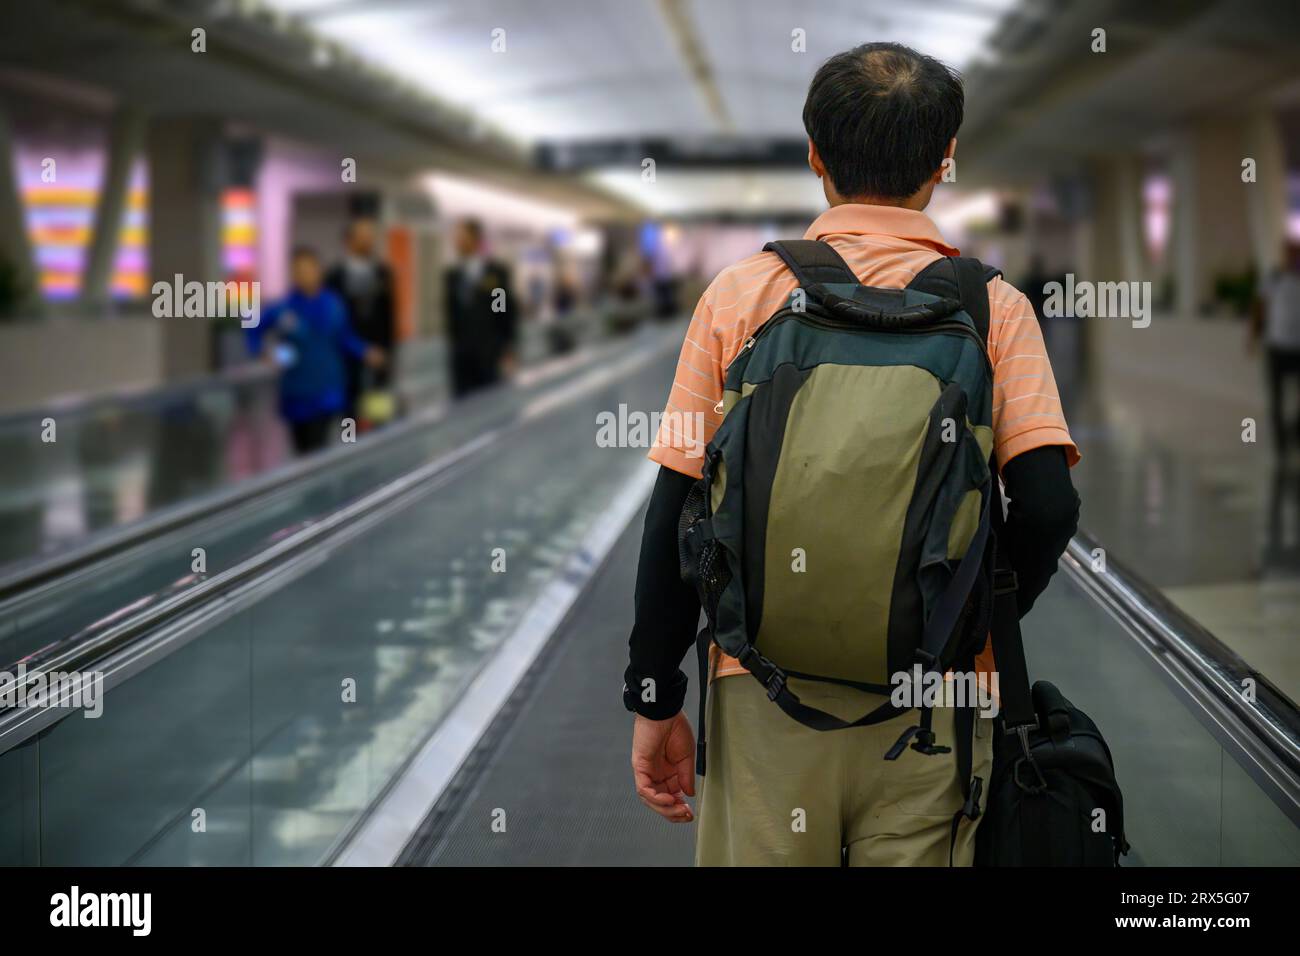 Uomo che cammina sul passaggio pedonale in un aeroporto. Persone non riconoscibili sullo sfondo. Foto Stock